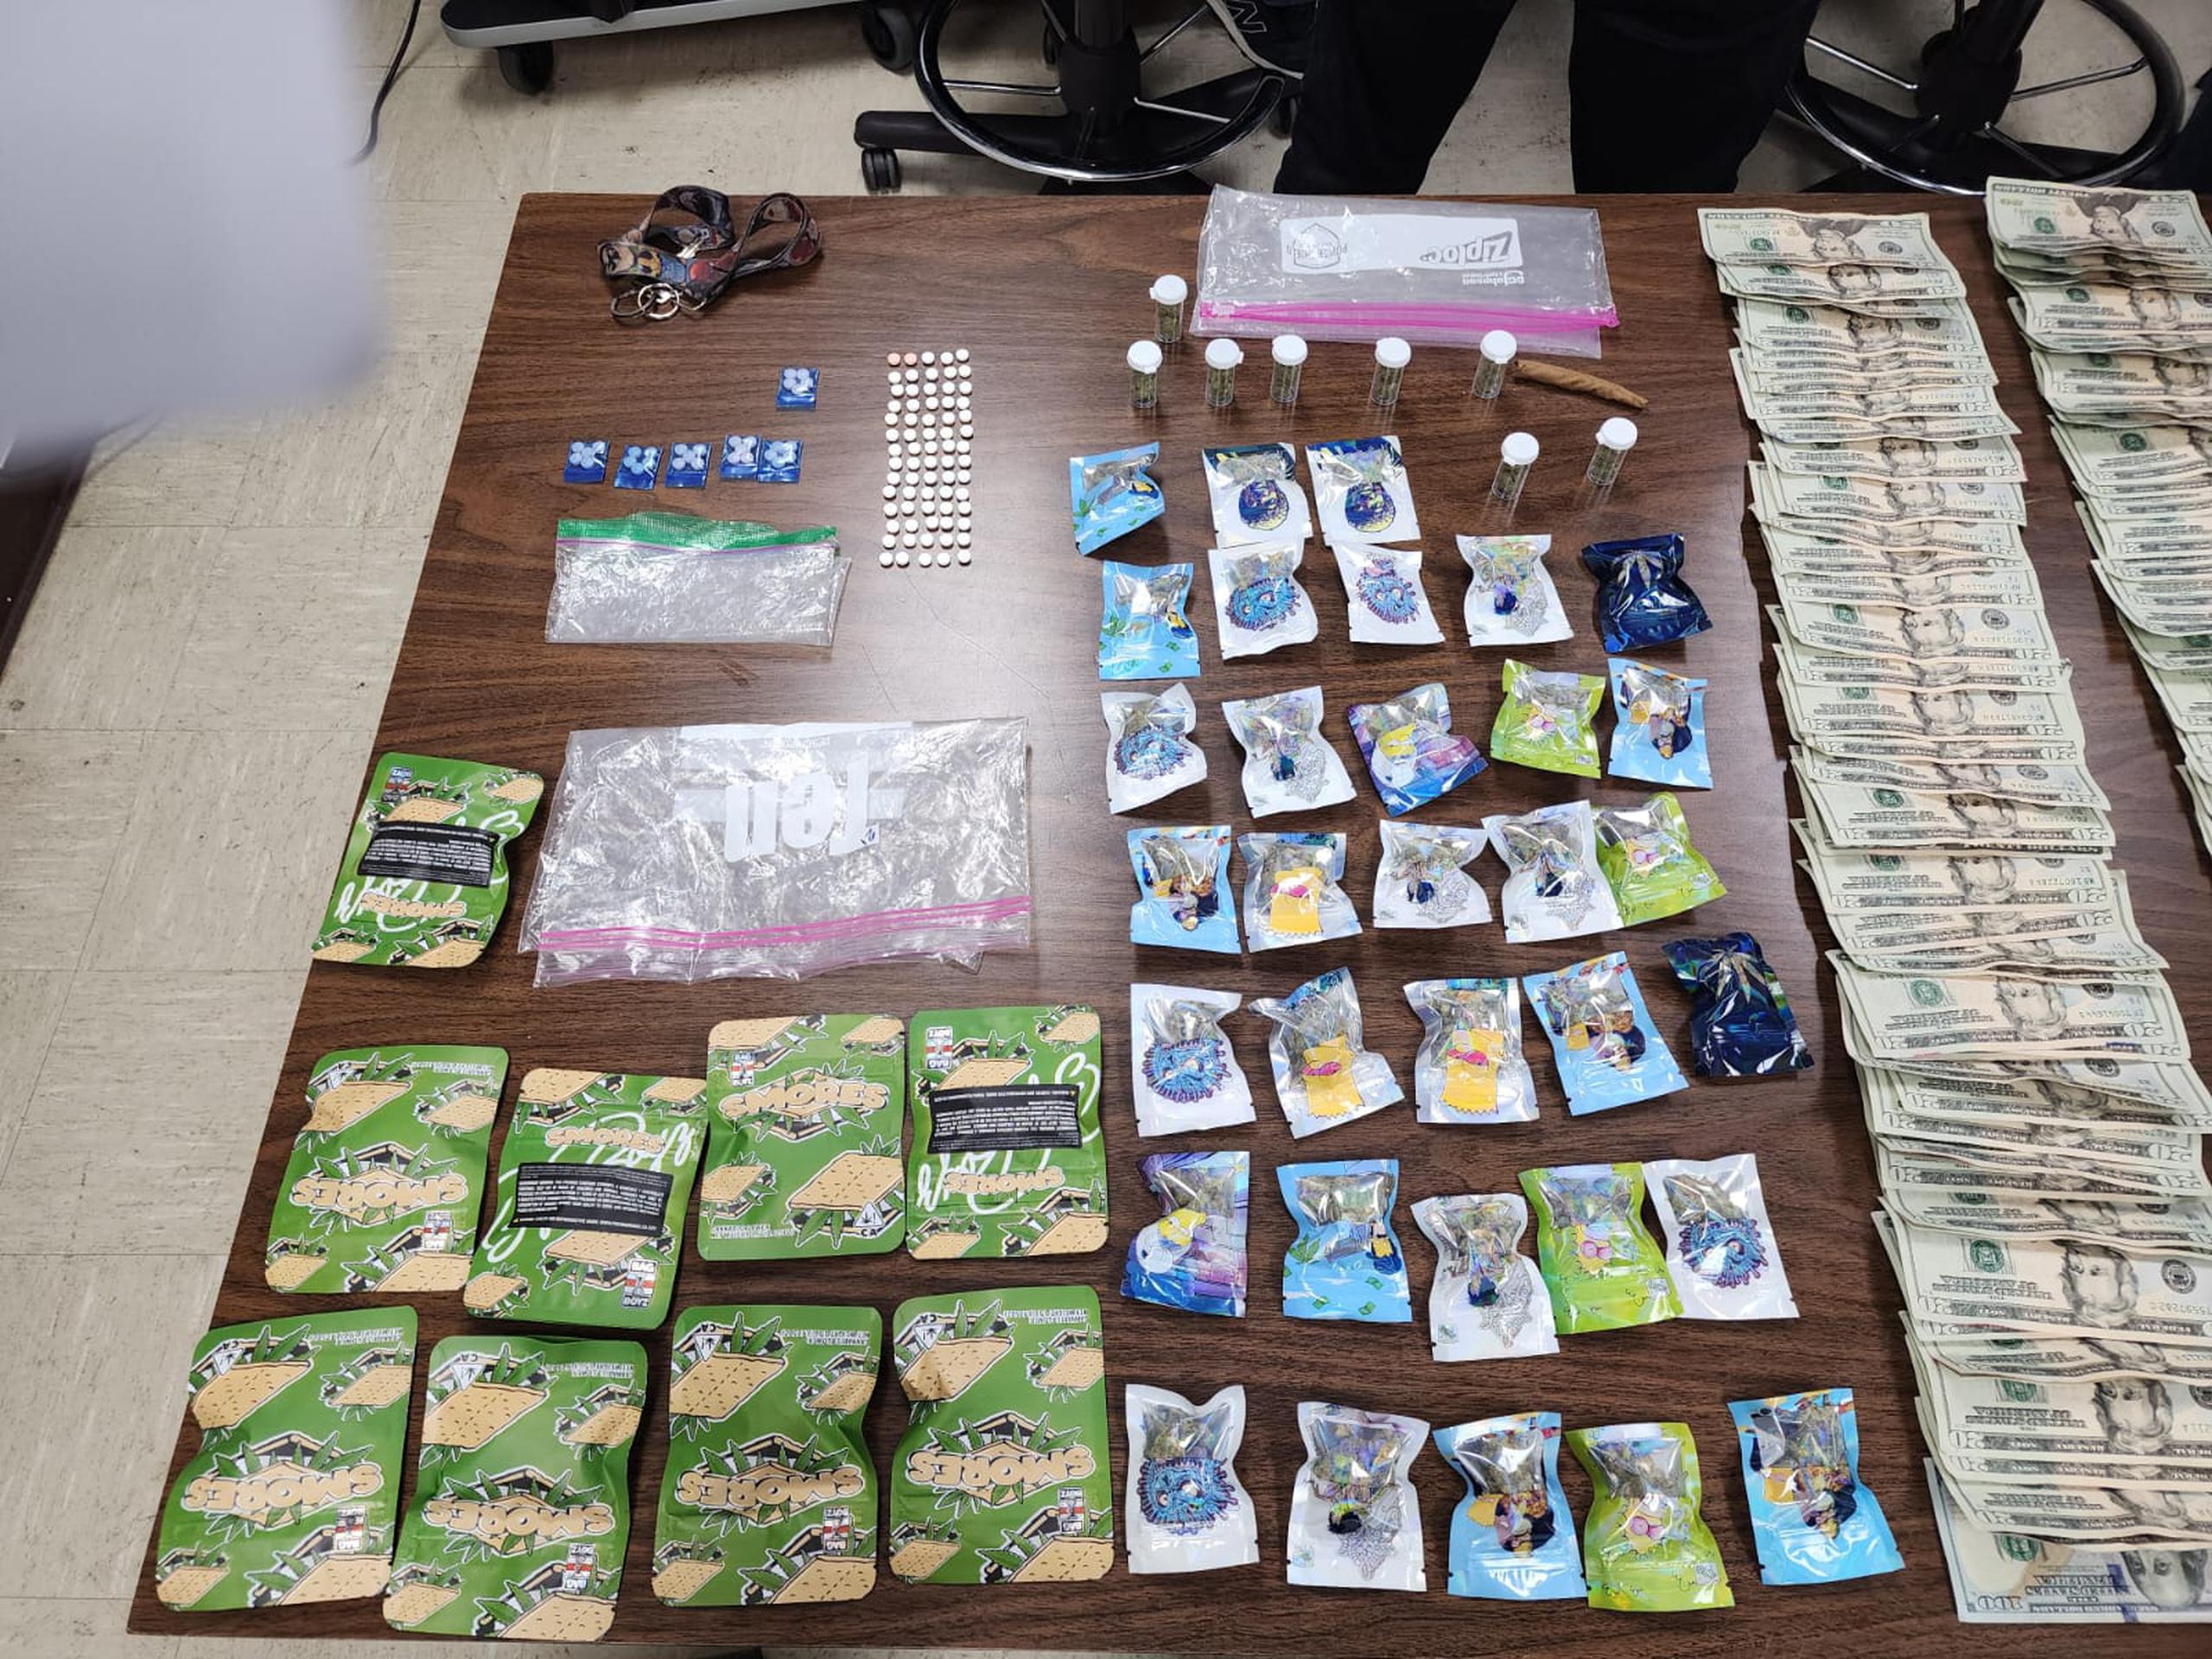 Marihuana "cripy" y pastillas de medicamentos controlados ocupados en un motel de Toa Baja, donde arrestaron a tres sospechosos de incidentes violentos en el área policíaca de Bayamón.